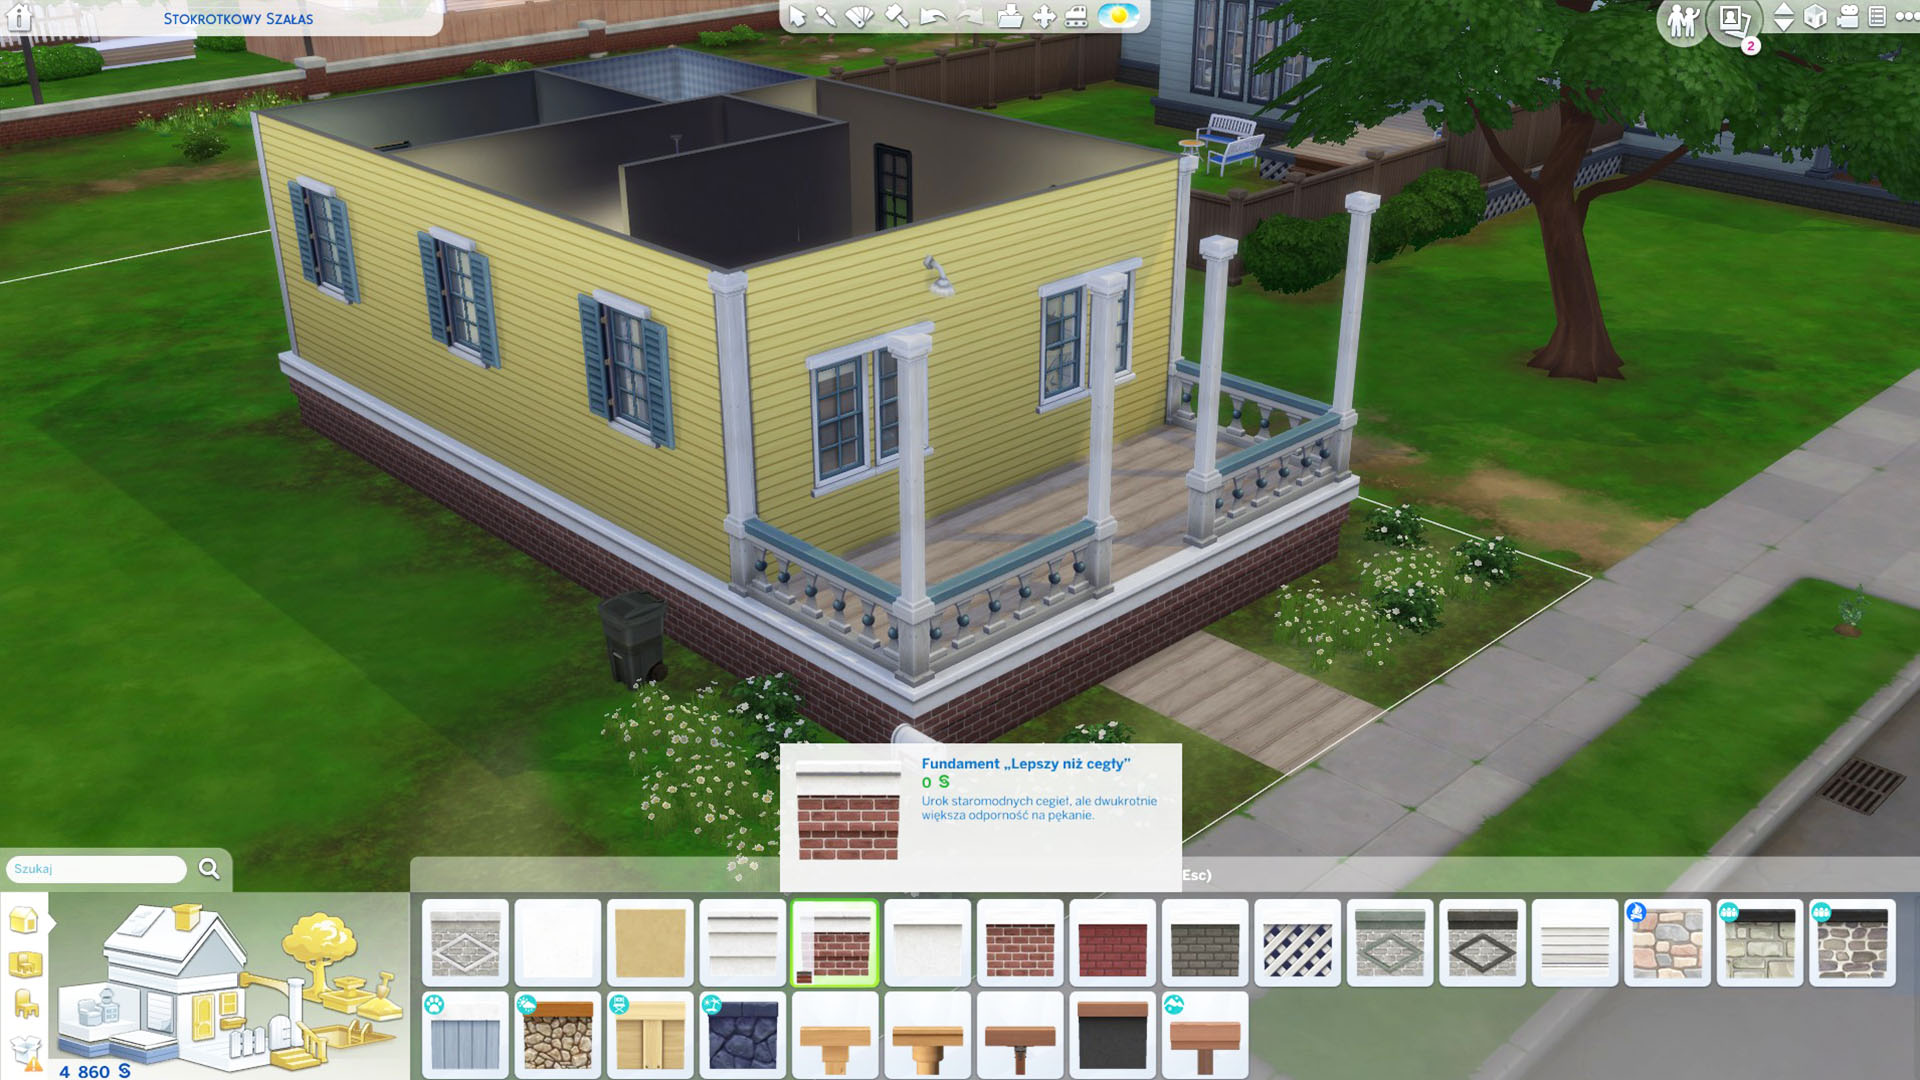 Jak Zrobic Skosy W The Sims 4 Jak zrobić fundamenty w The Sims 4 po aktualizacji? - Portal dla graczy